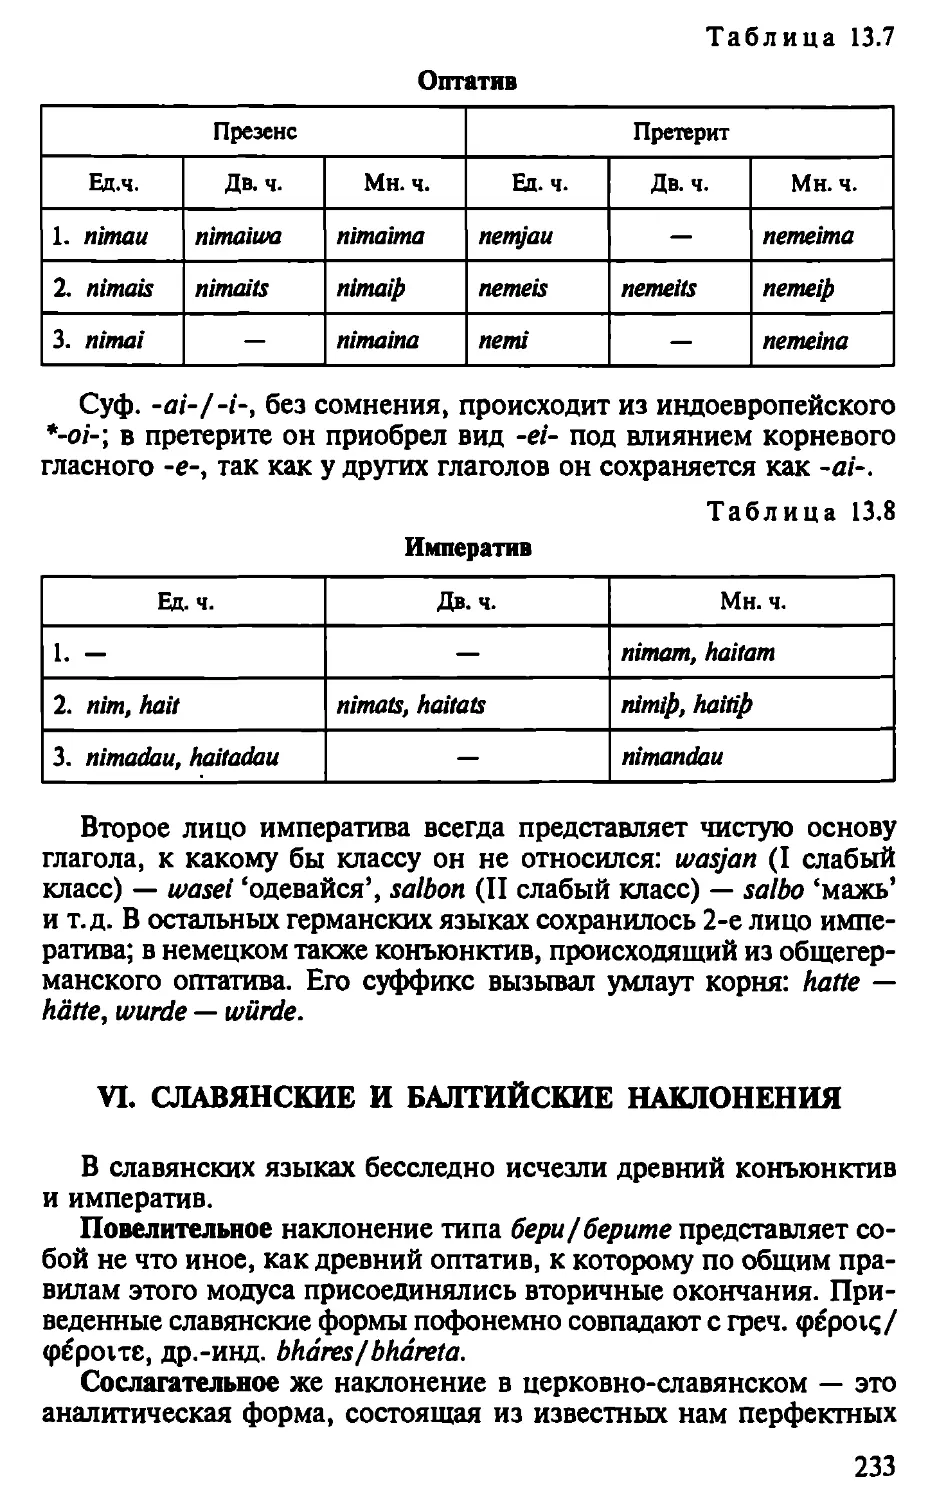 VI. Славянские и балтийские наклонения